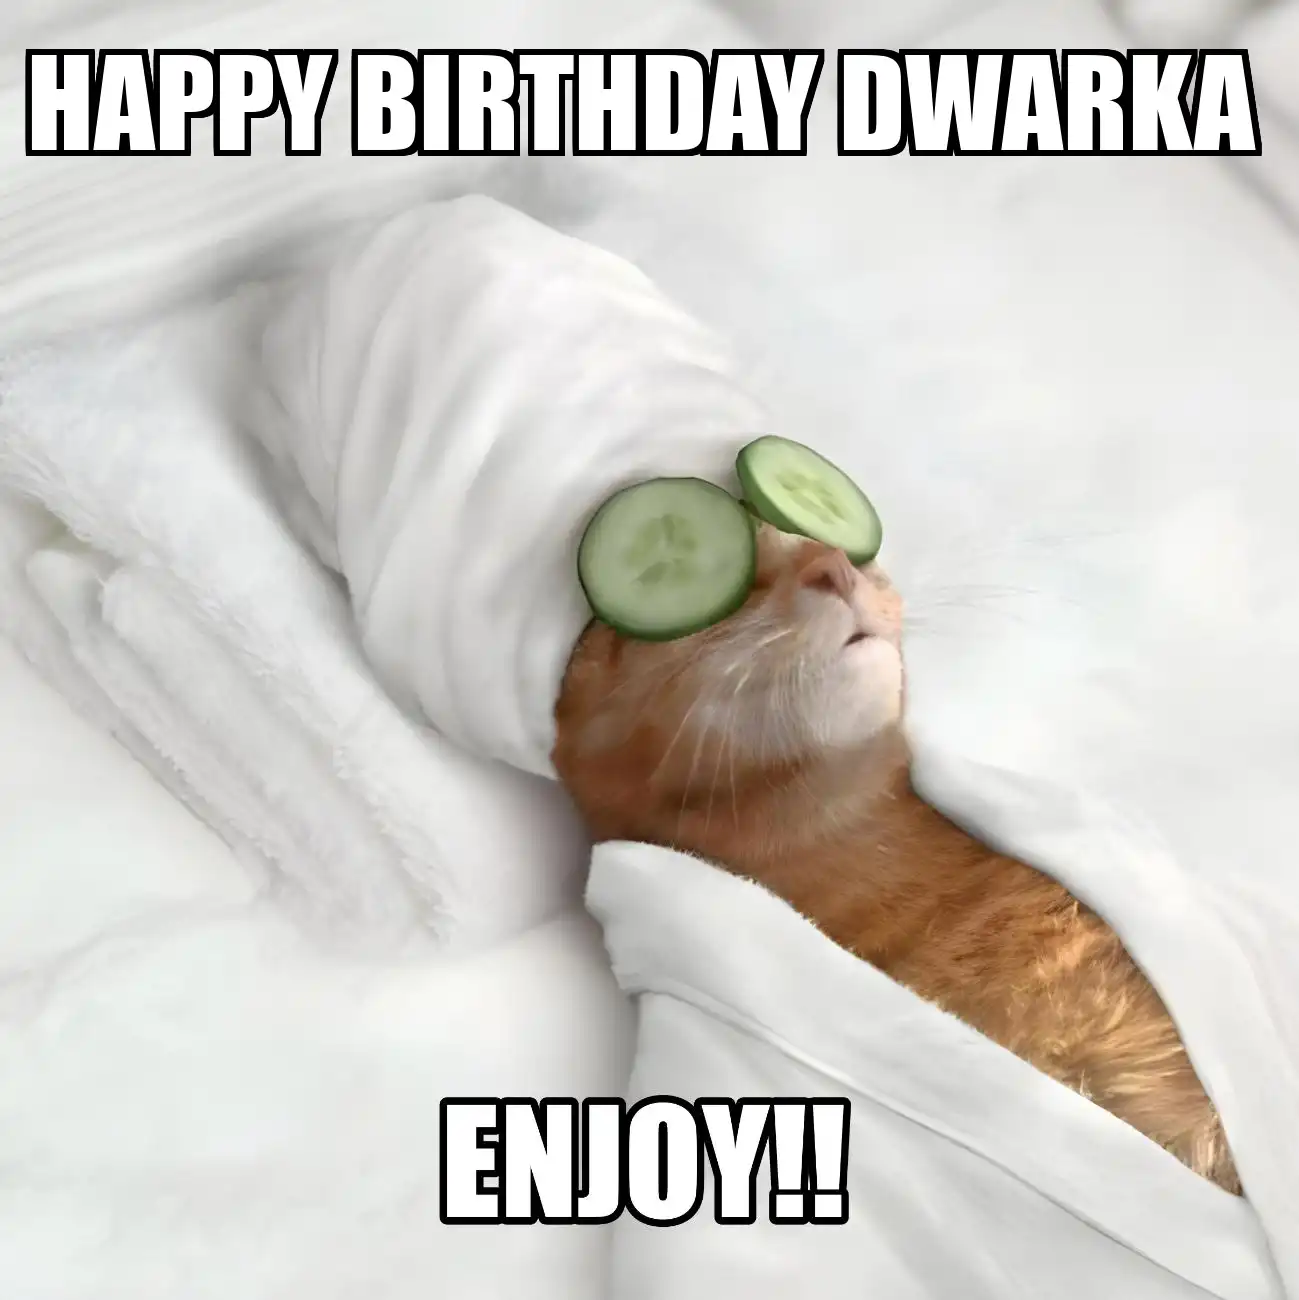 Happy Birthday Dwarka Enjoy Cat Meme